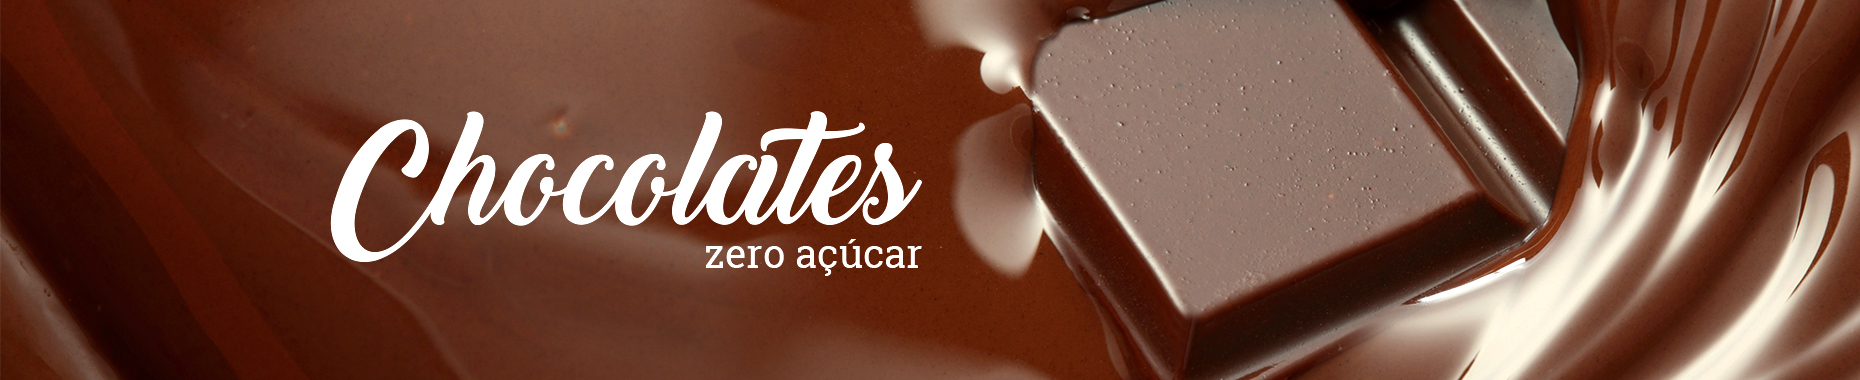 Chocolates Zero Açúcar Vitao